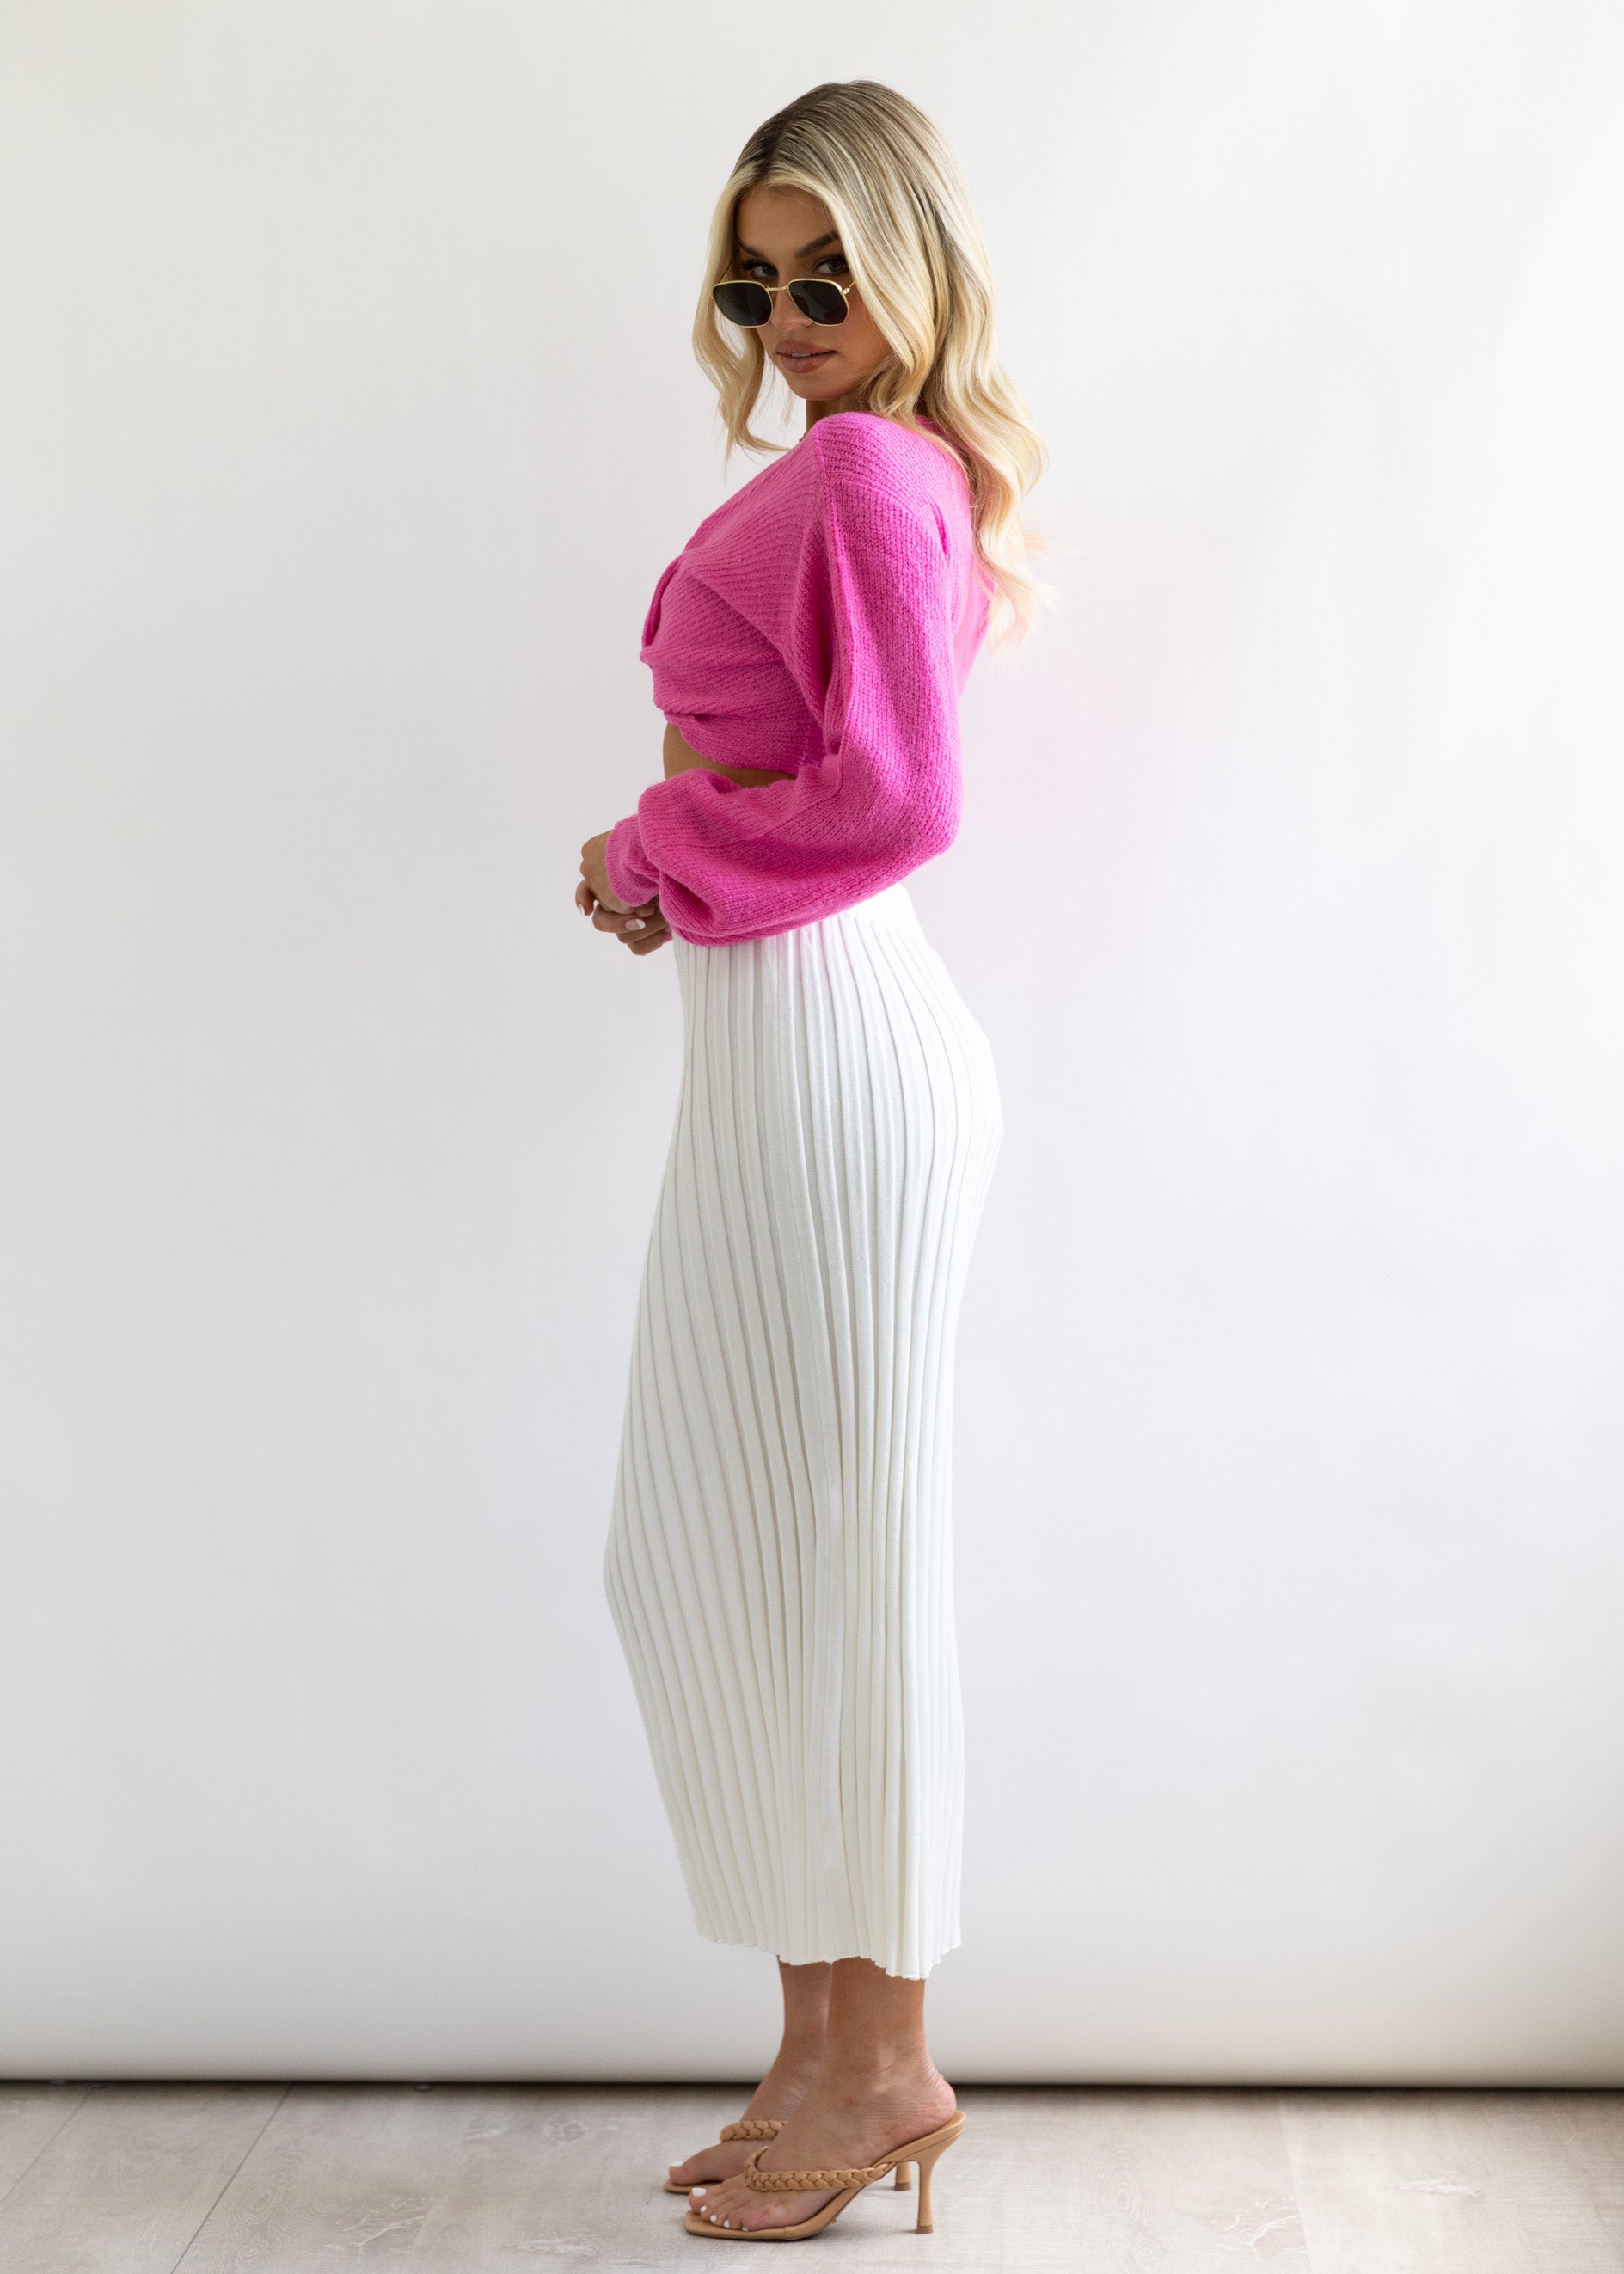 Kesor Cropped Sweater - Hot Pink